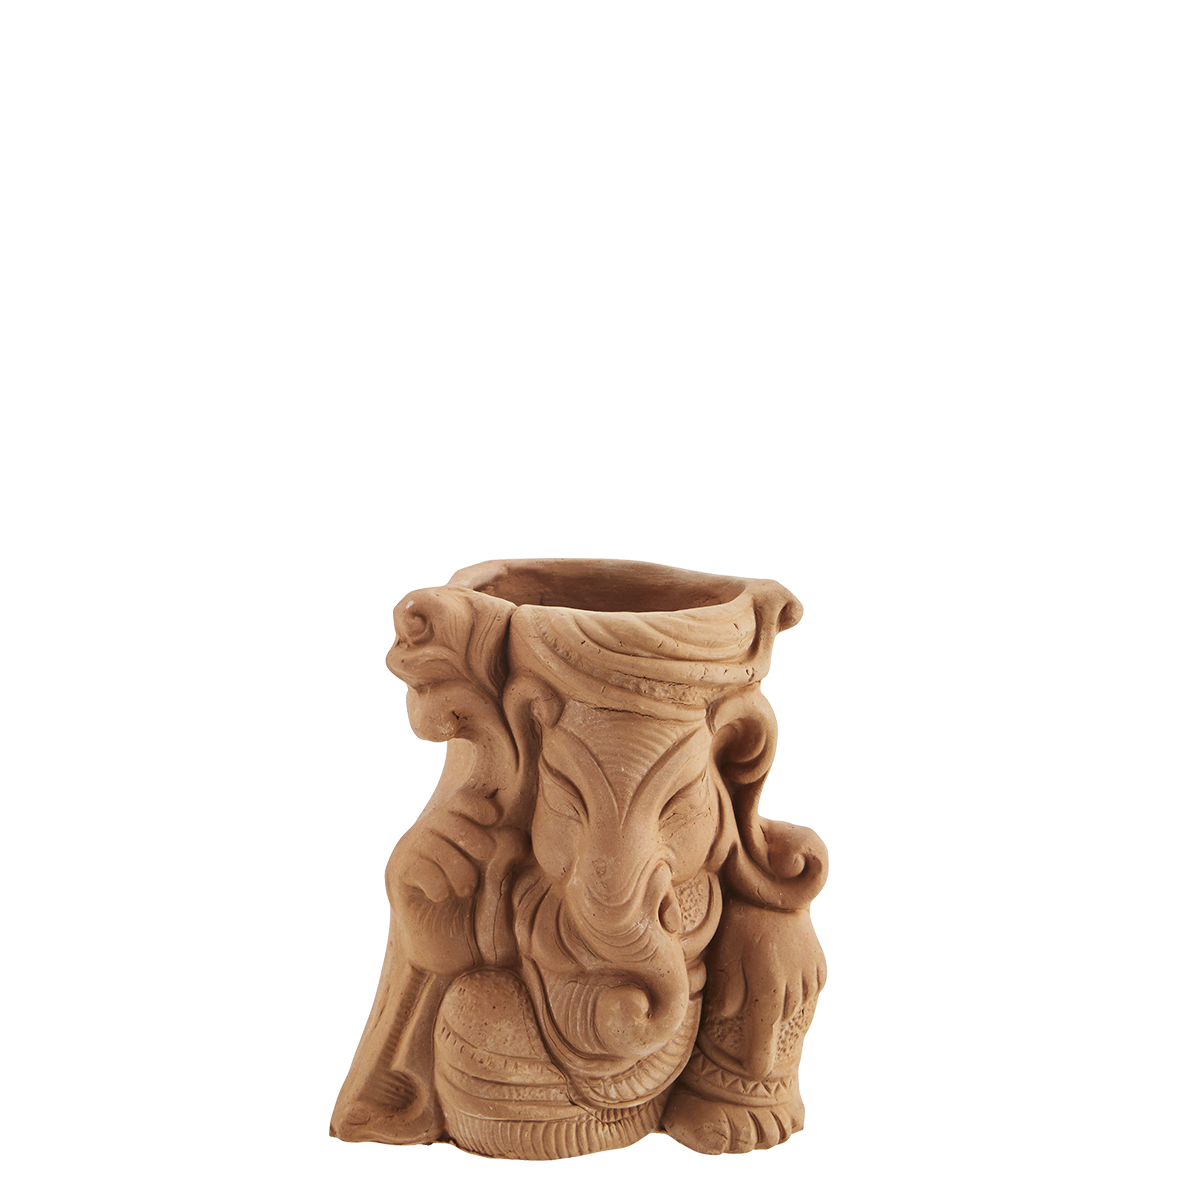 Earthenware Ganesha vase